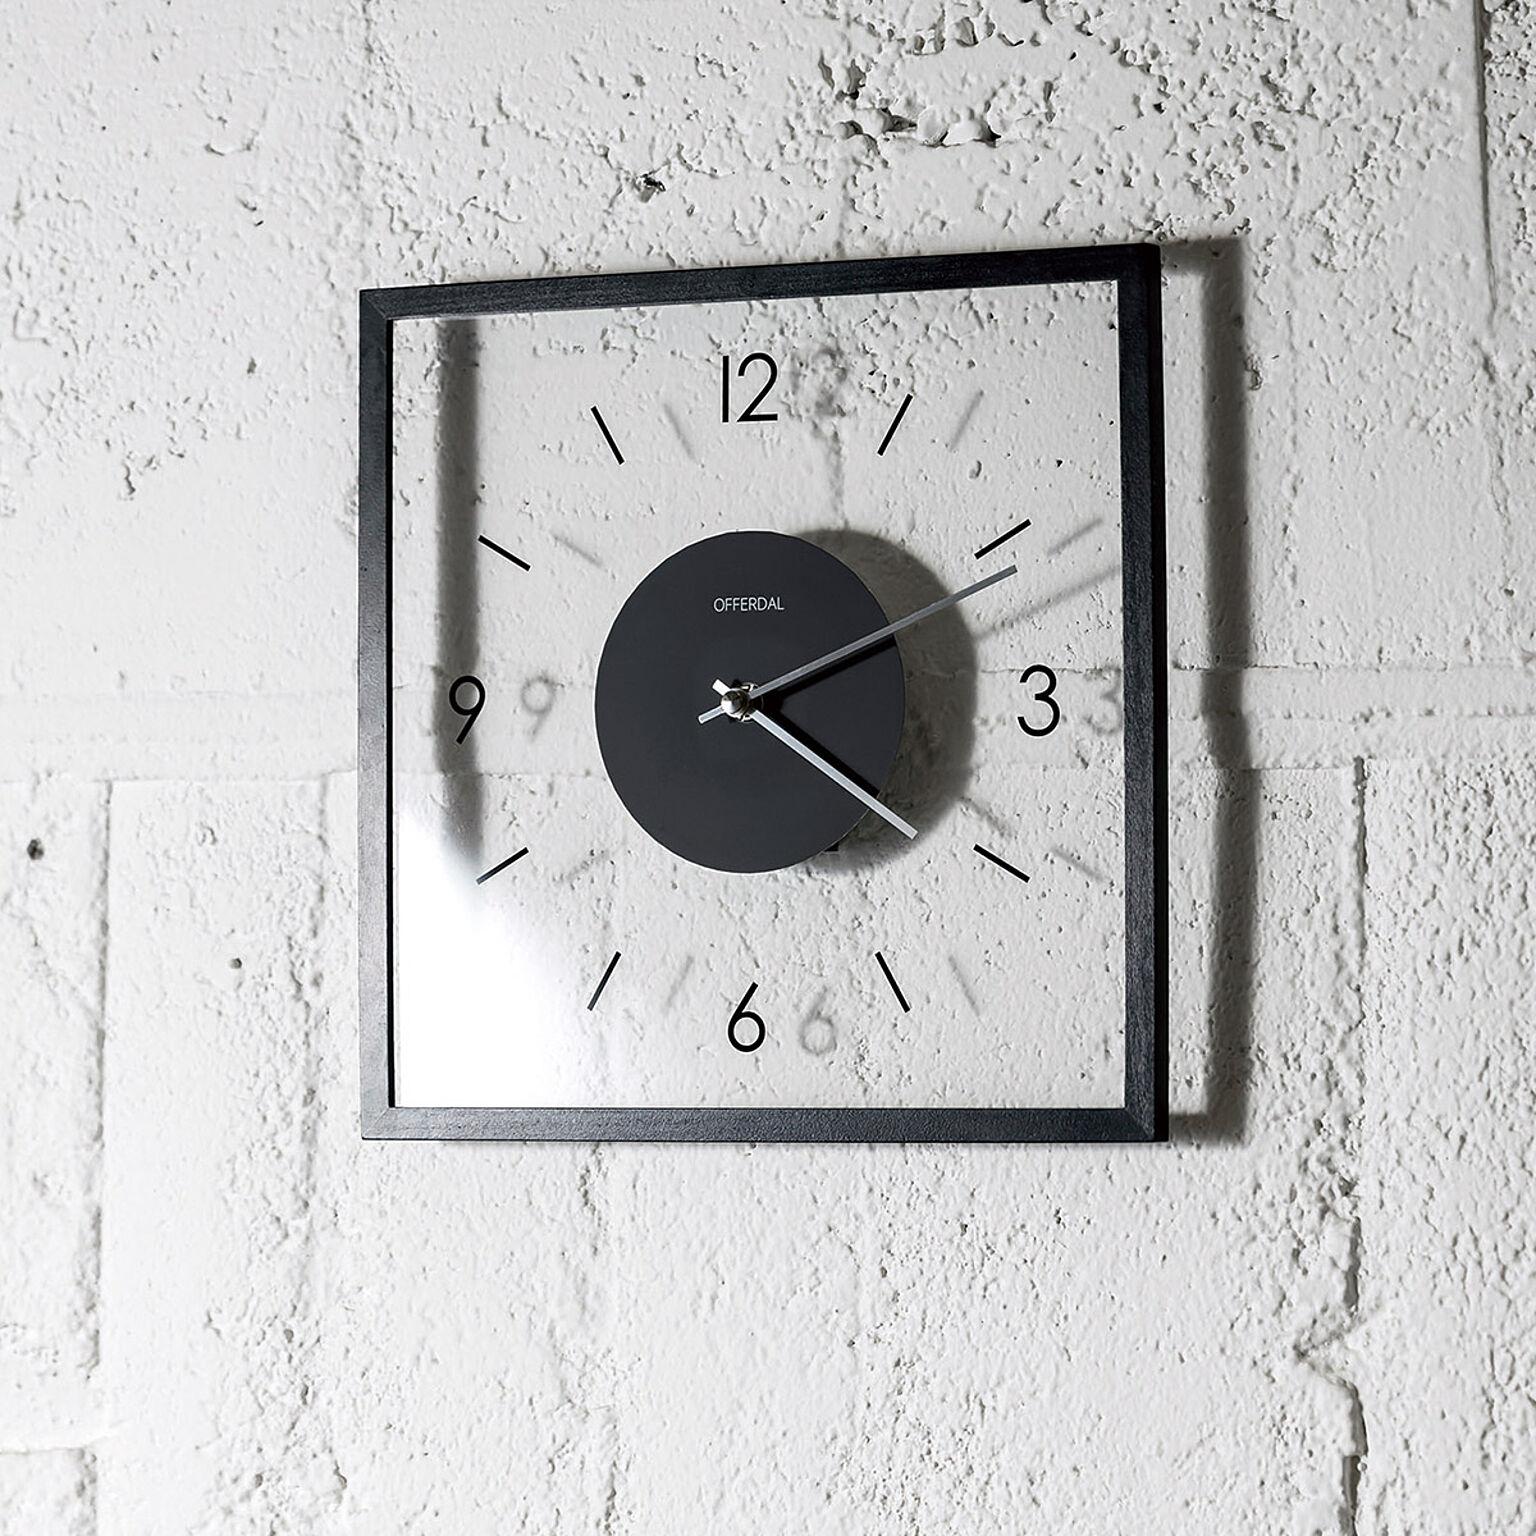 壁掛け時計 ラトゥリ Laturi 【ブラック】  掛け時計 おしゃれ 北欧 壁掛け時計 時計 壁掛け ラトゥリ Laturi CL-4424 シンプル モダン